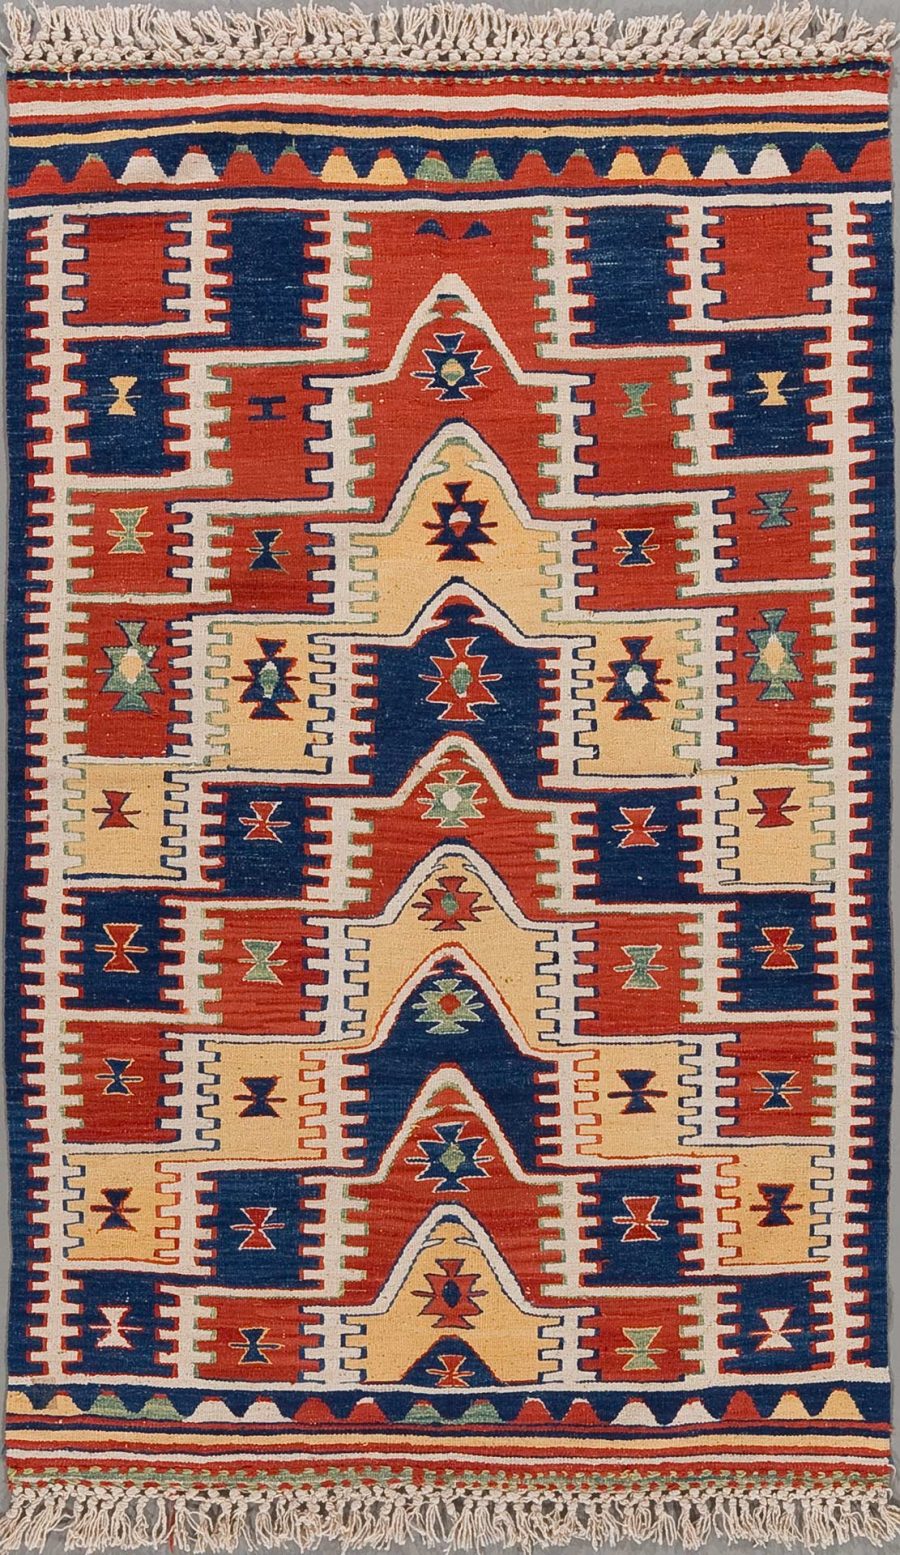 Detailreich gewebter Teppich mit traditionellen Mustern in den Farben Rot, Blau, Beige und Akzenten in Orange und Grün, umgeben von einer Bordüre mit geometrischen Formen und abgeschlossen mit Fransen an beiden Enden.